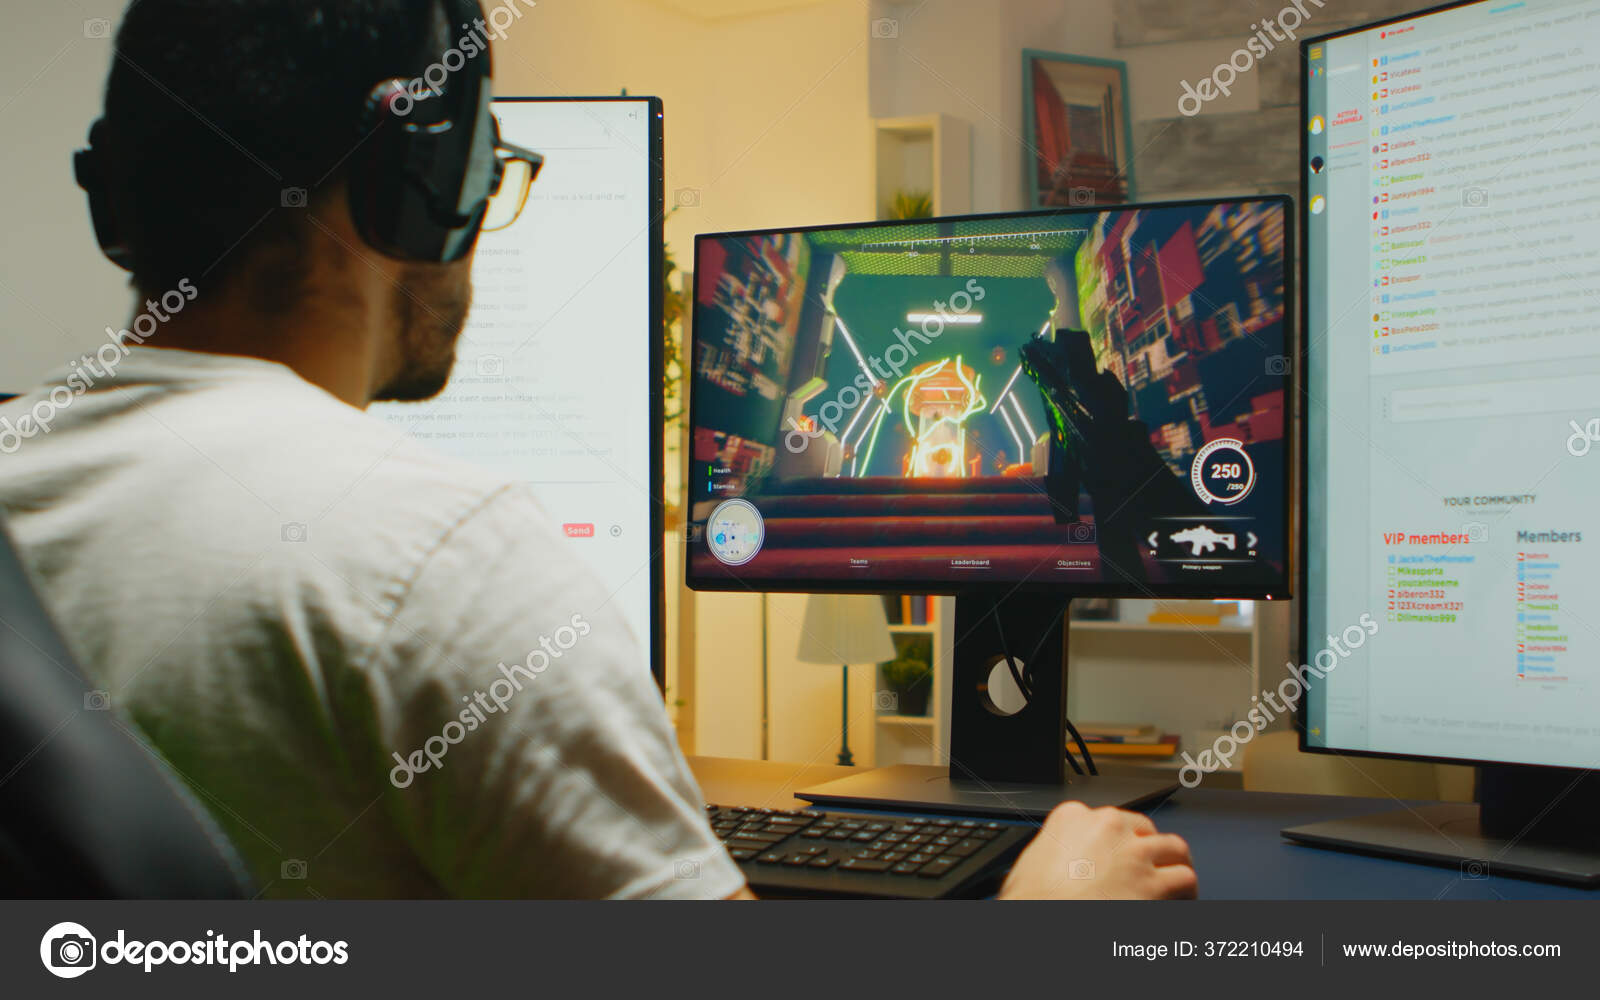 Closeup de homem com fone de ouvido para jogos jogando jogo de ação online  multiplayer usando configuração de pc profissional no torneio. jogador  olhando para a tela do computador enquanto conversa com